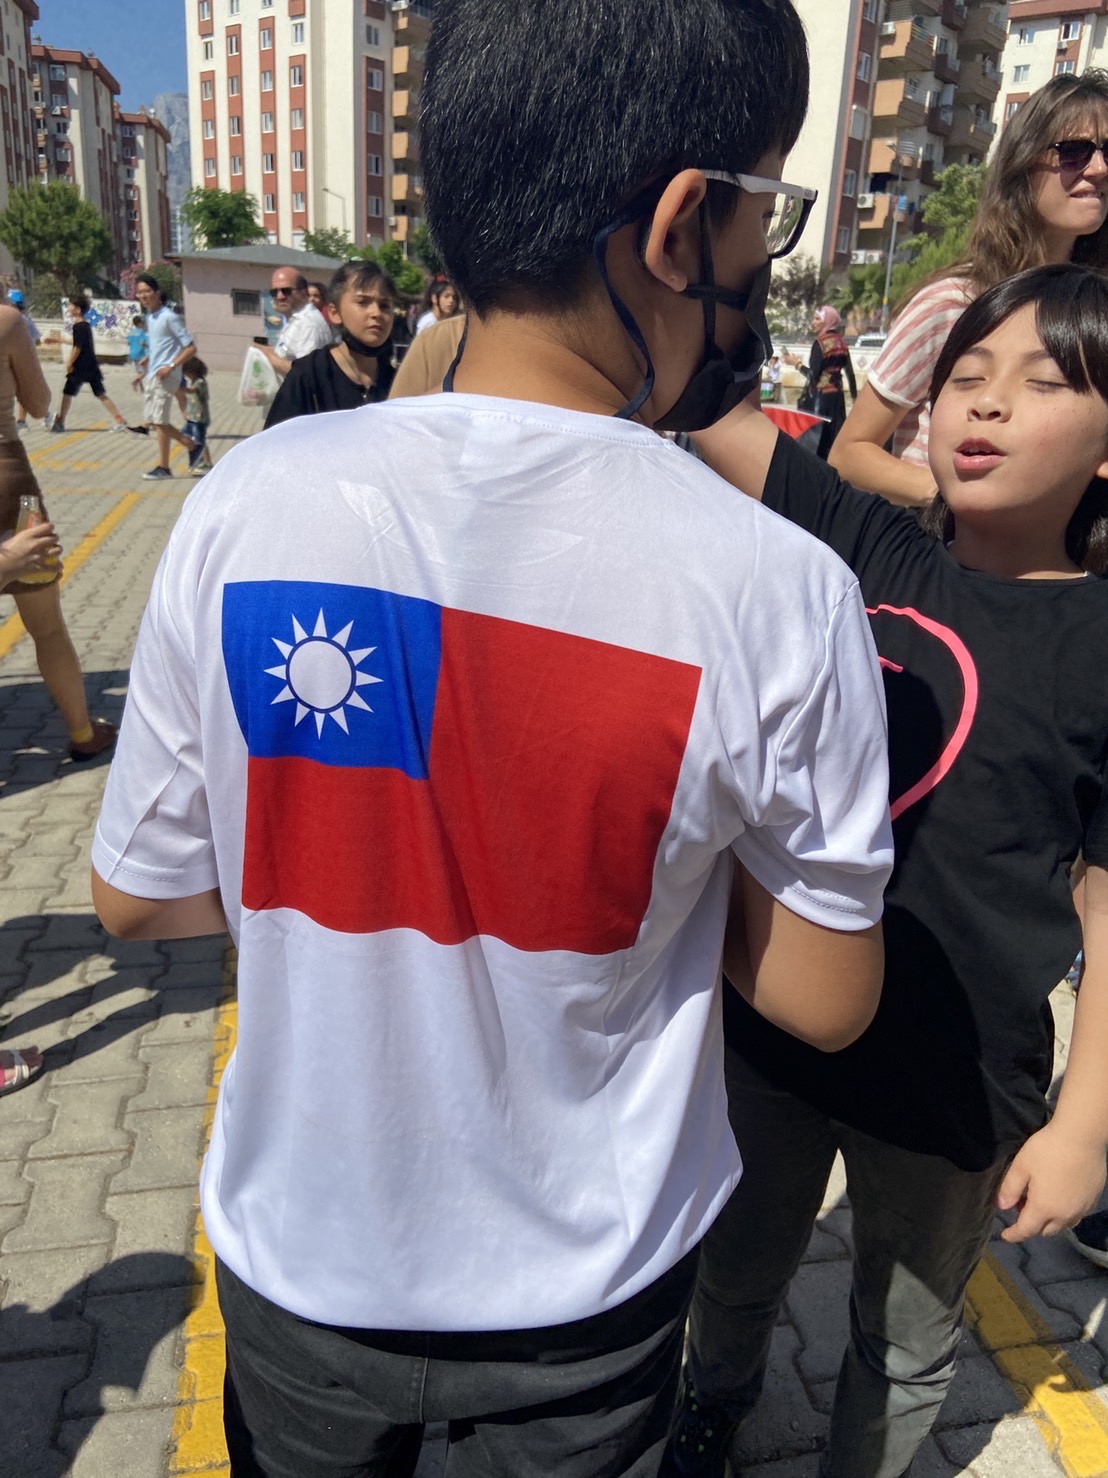 後面印製大面臺灣國旗